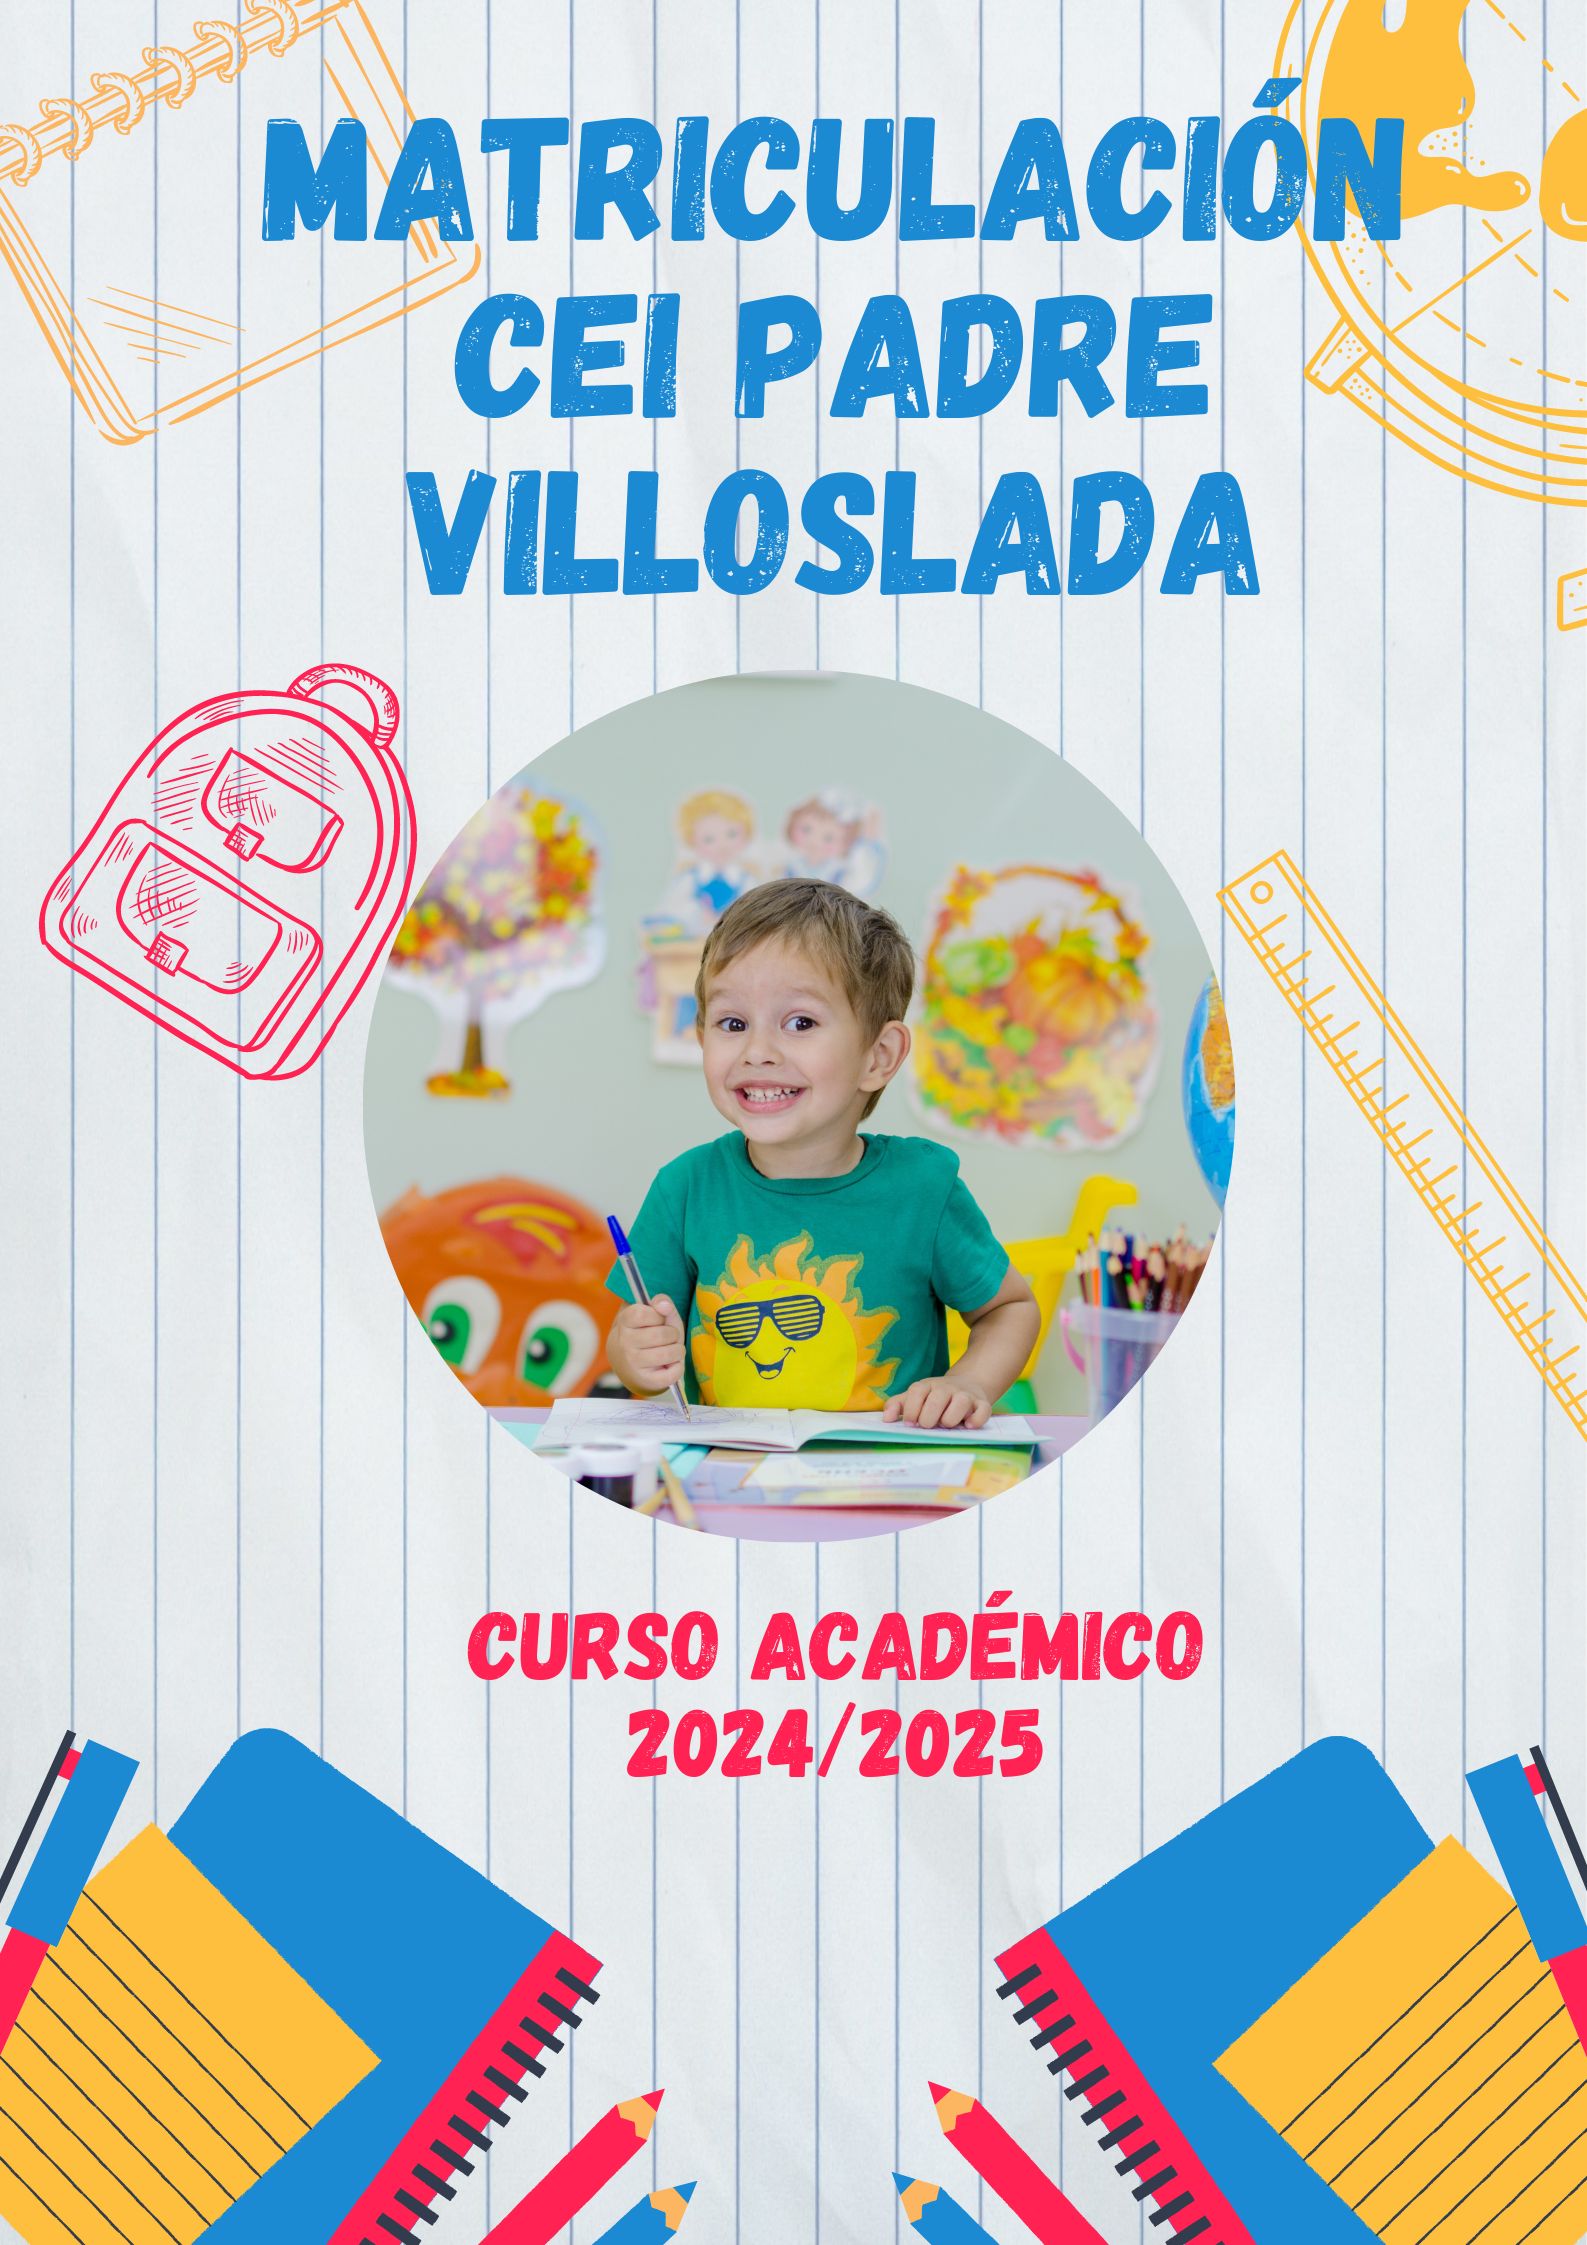 Matriculación CEI Padre Villoslada. Curso Académico 2024/2025.